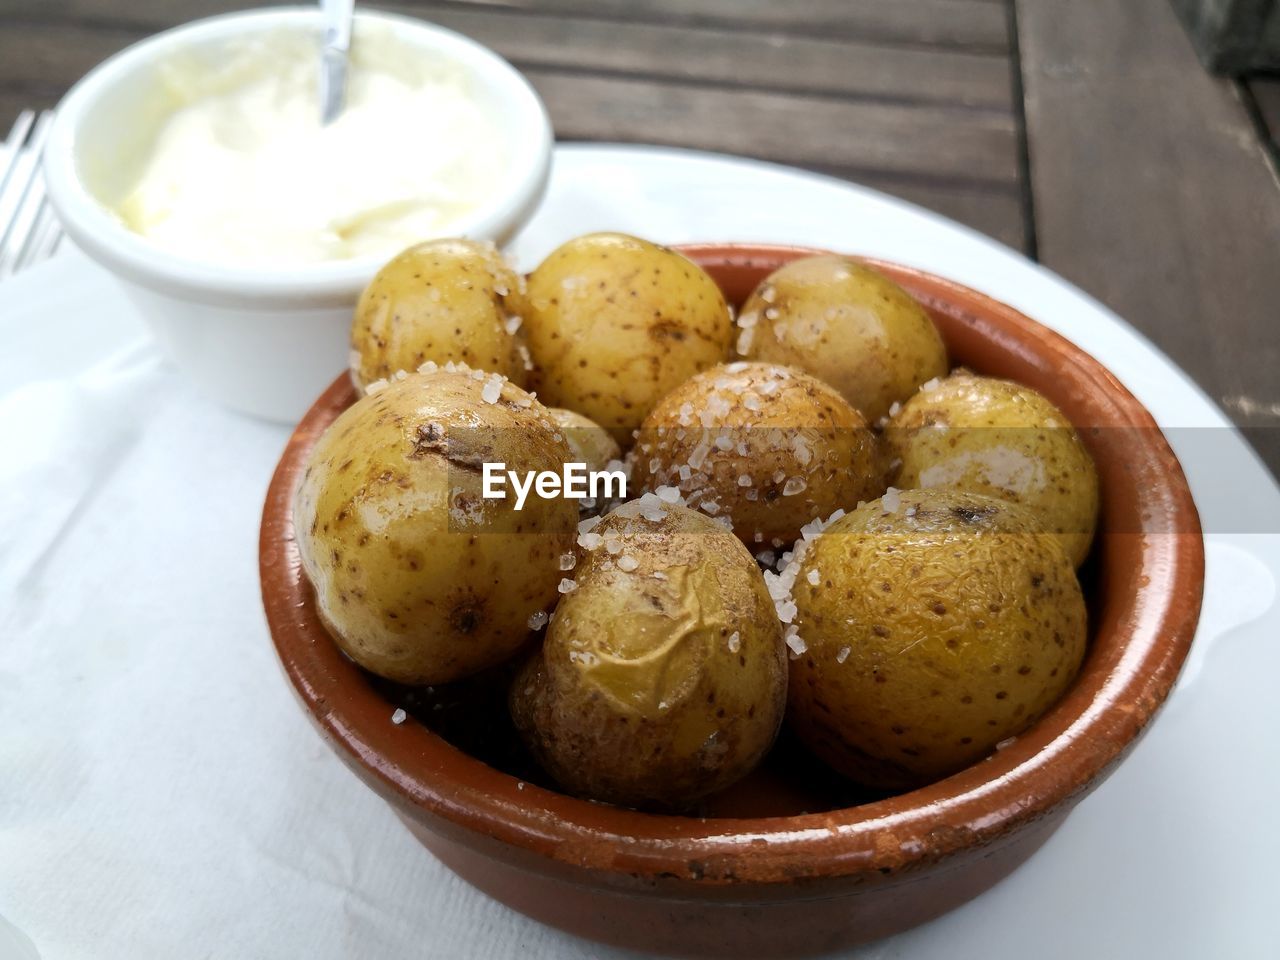 Papas arrugadas spanish tapas salty potatoes with aioli sauce in pot